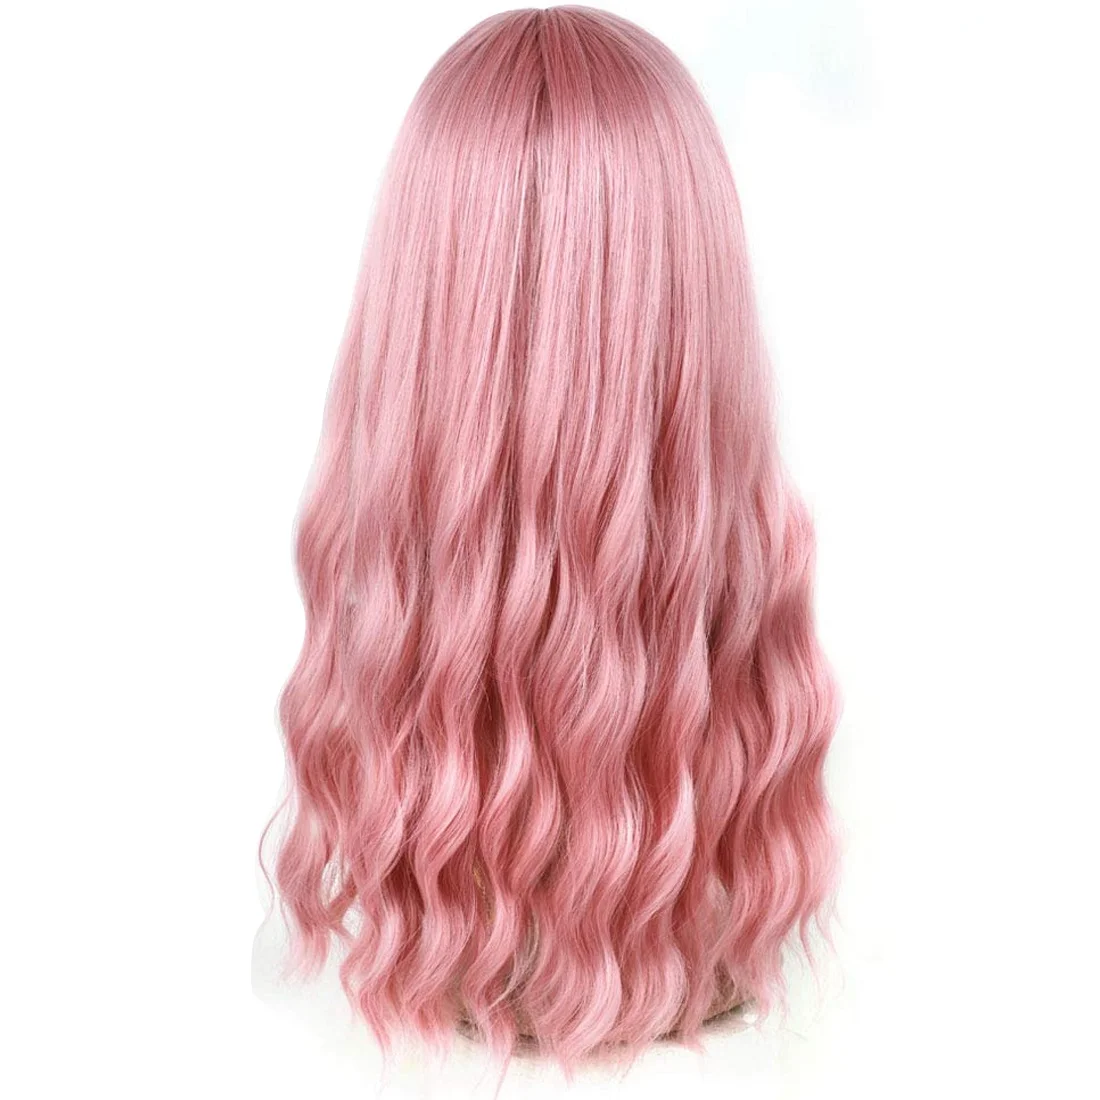 

Розовый парик с челкой, длинный волнистый парик с воздушной челкой, шелковистый, термостойкий парик, сменный парик с естественным внешним видом